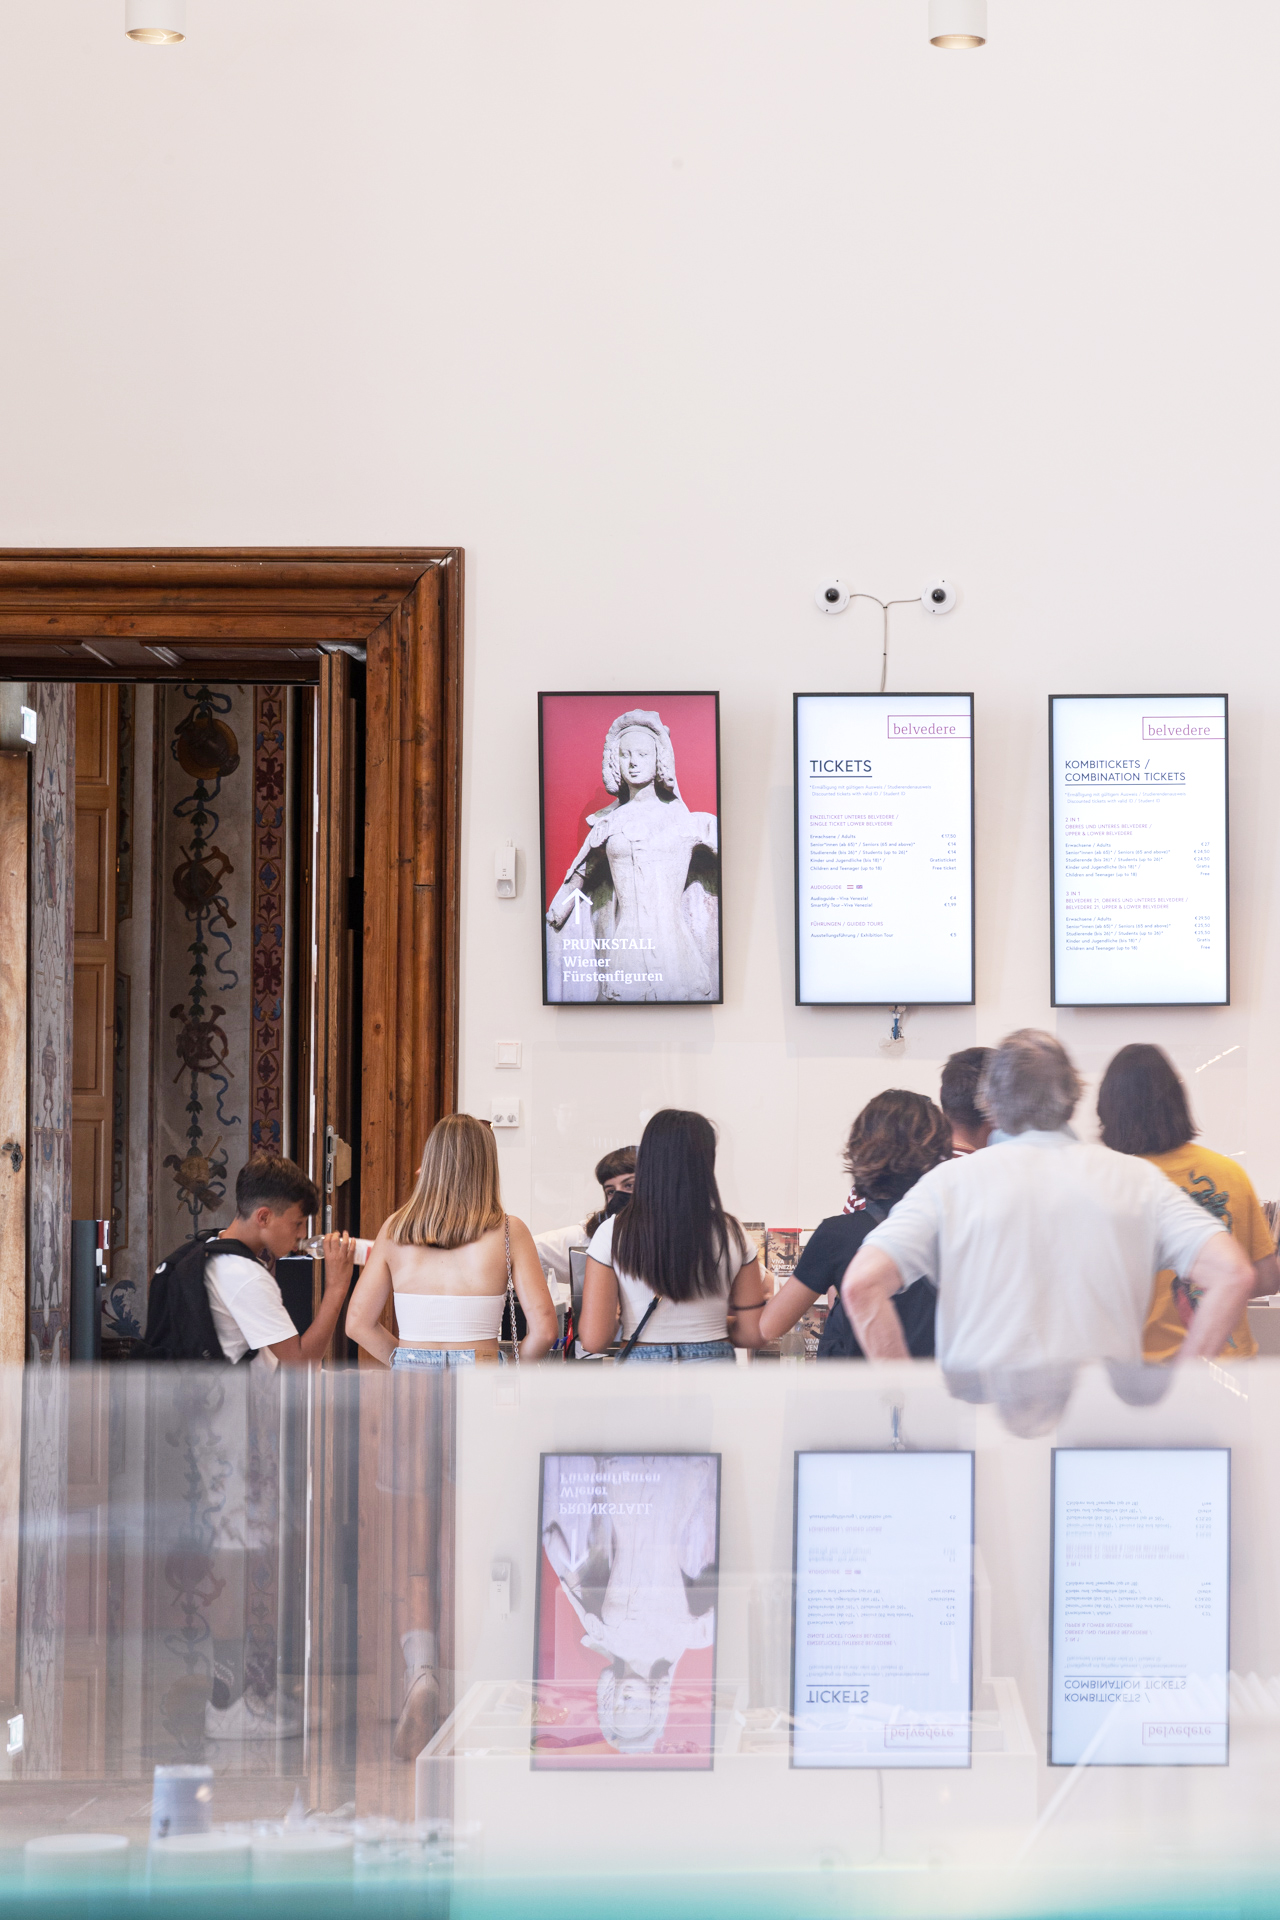 Menschen vor einer Türe stehend, neben der verschiedene digitale Displays mit Ausstellungsinformationen installiert sind